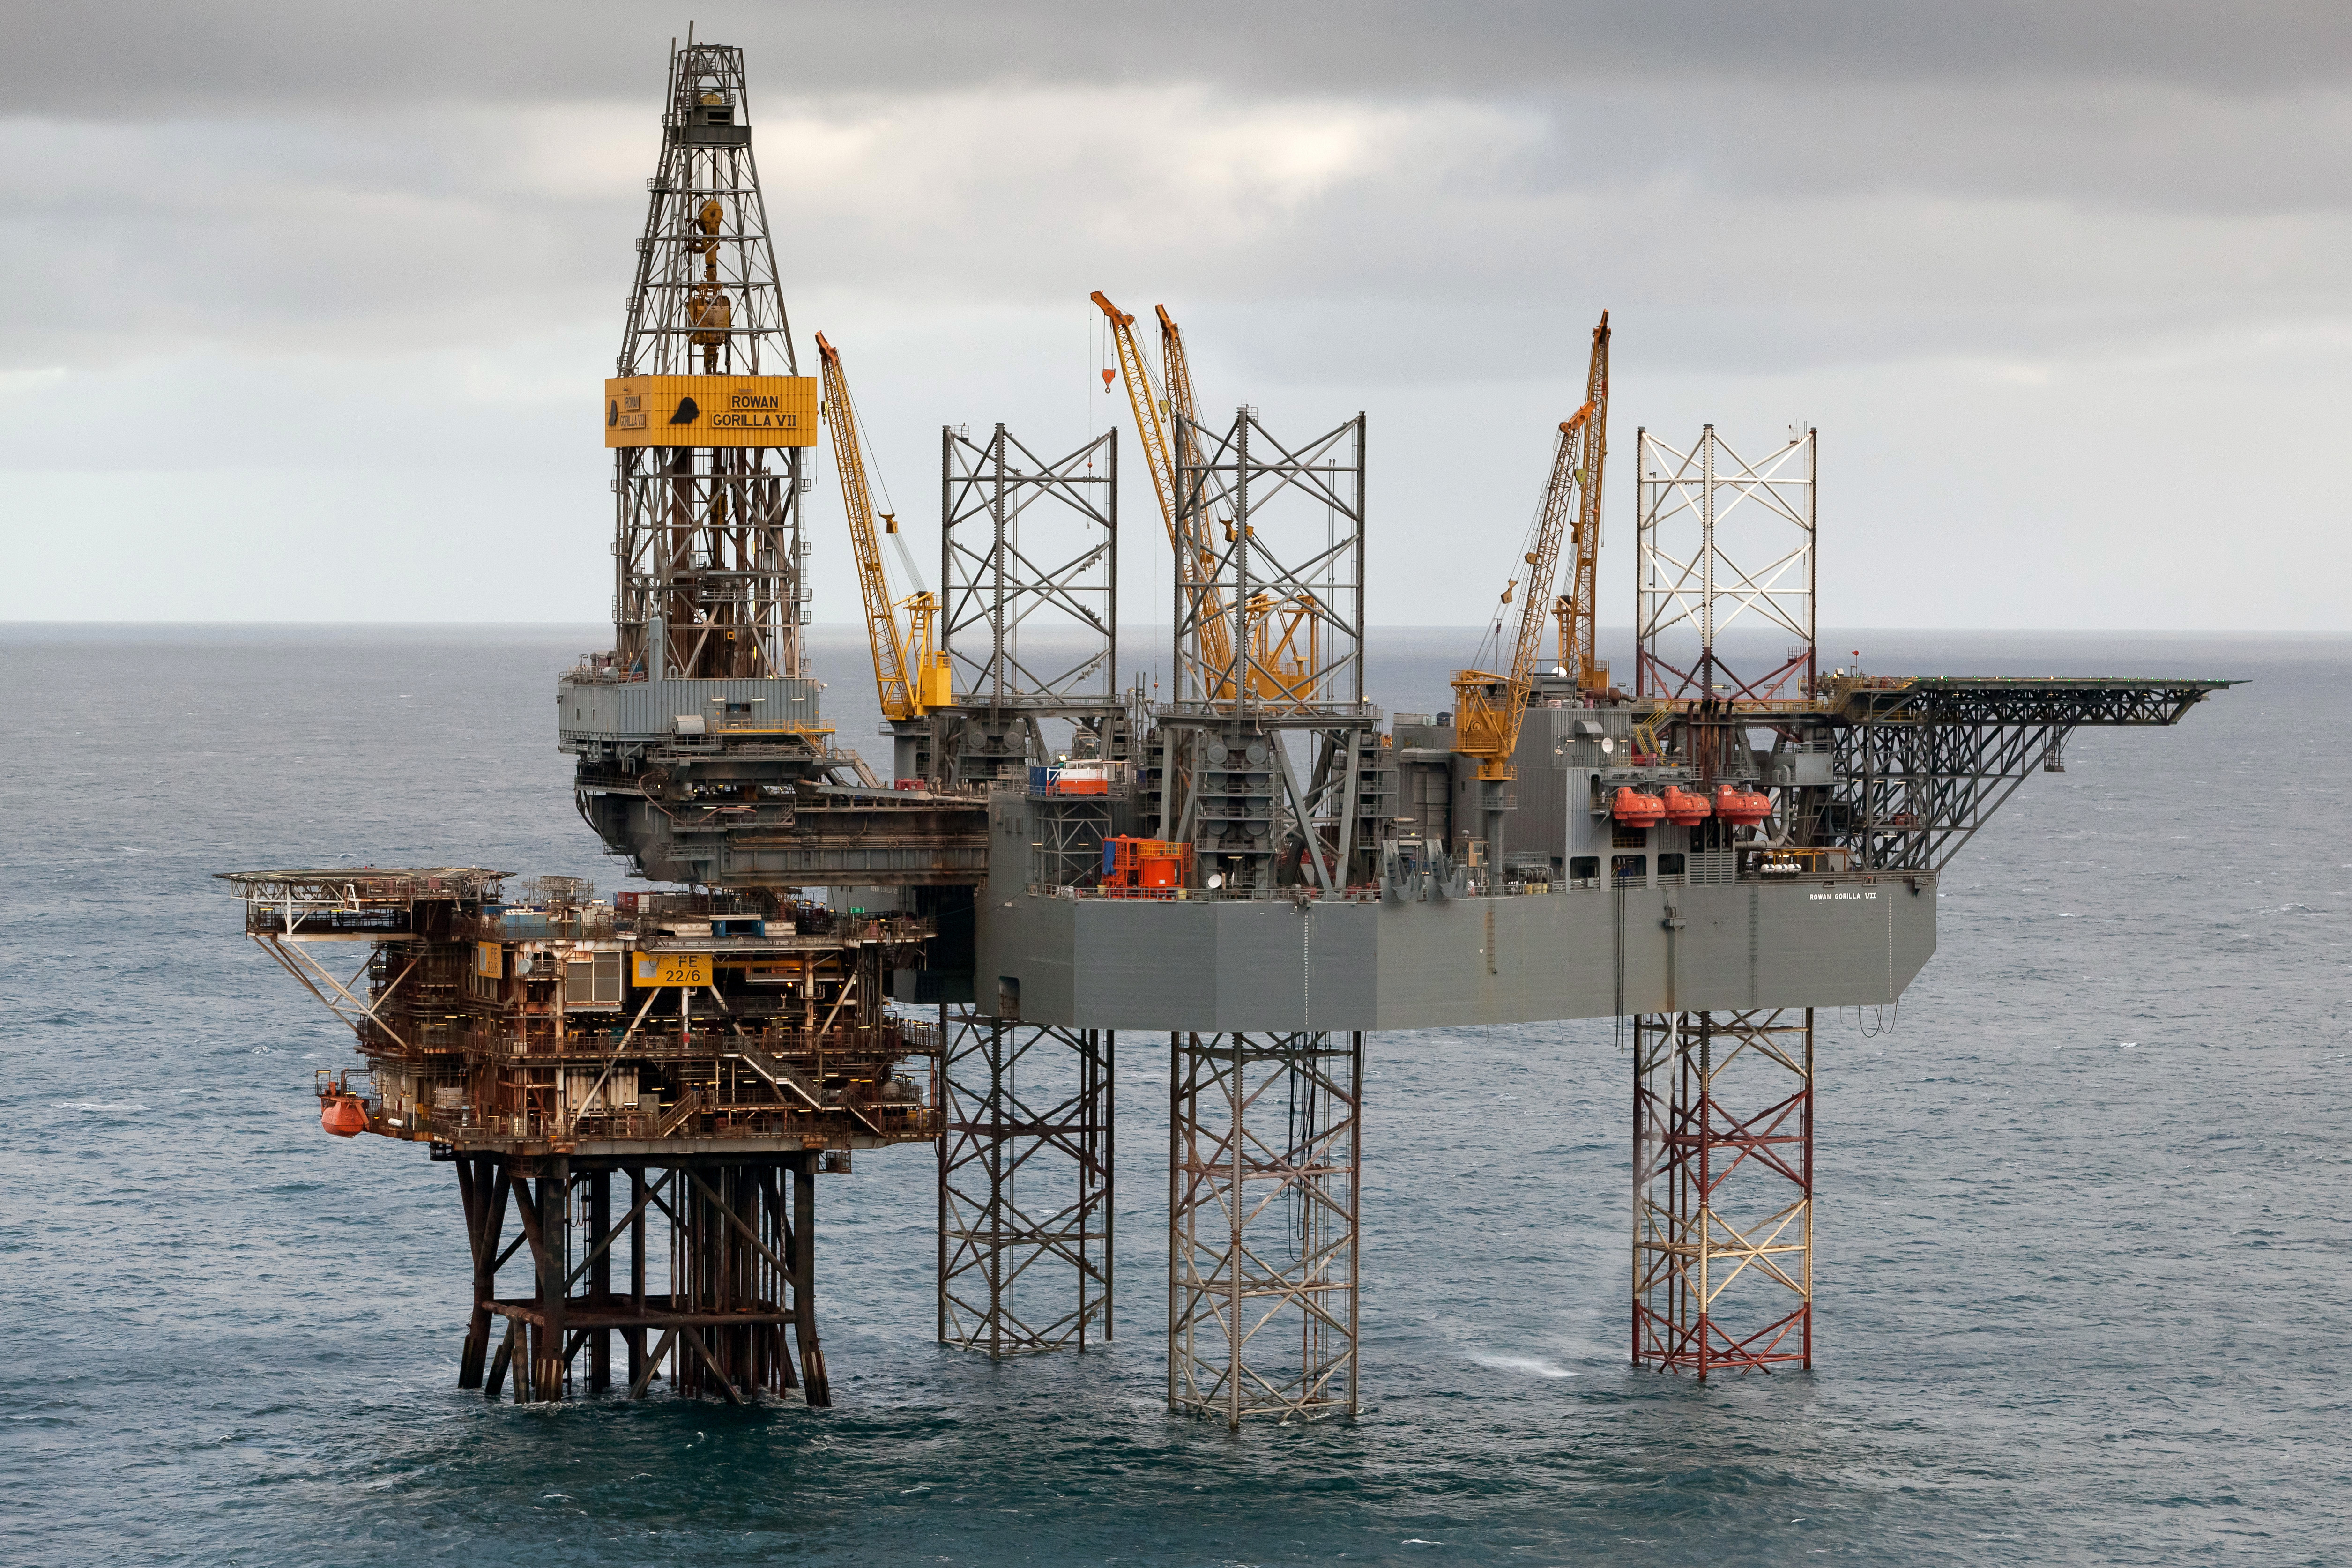 Буровая утром. Нефтевышка в Северном море. Нефтяная платформа "Дропнер" 1995. Нефтяная платформа в Северном море. Нефтяная платформа Draugen.